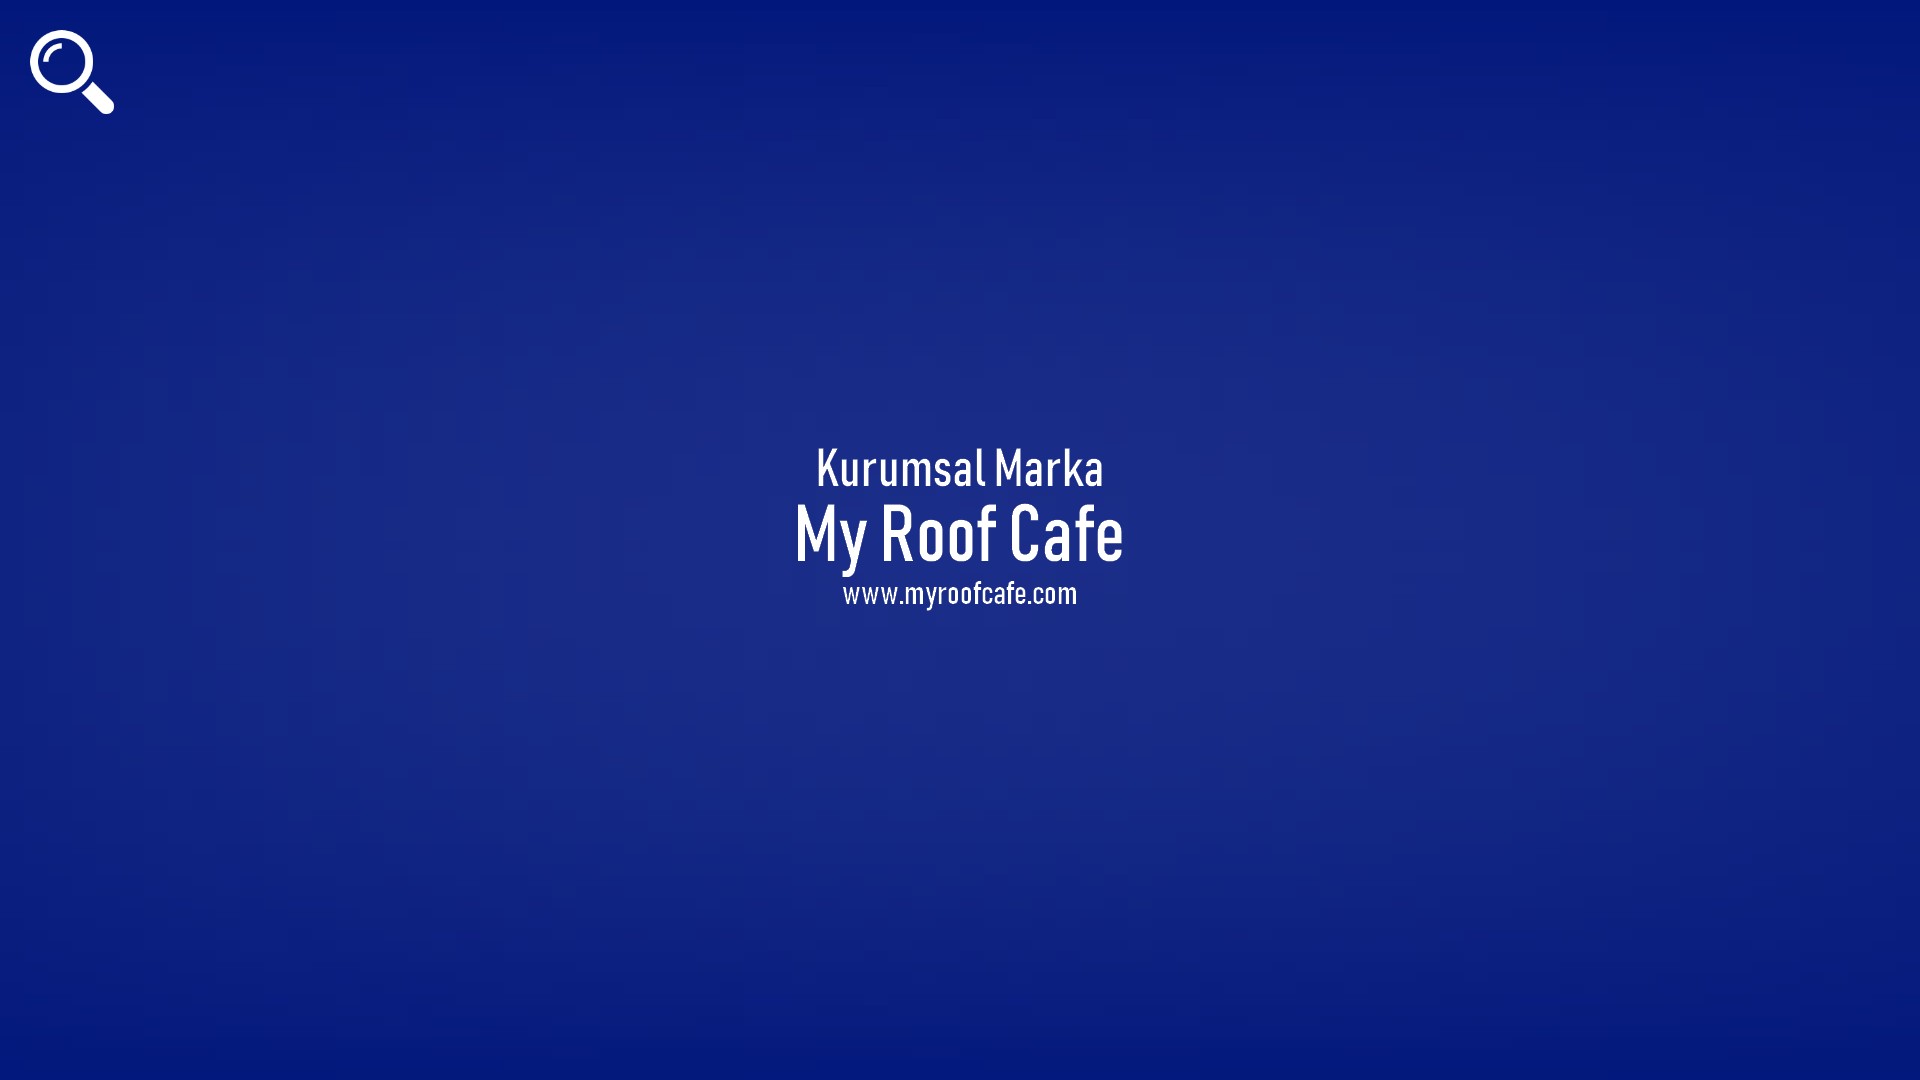 My Roof Cafe başlıklı içeriğin kapak resmi.